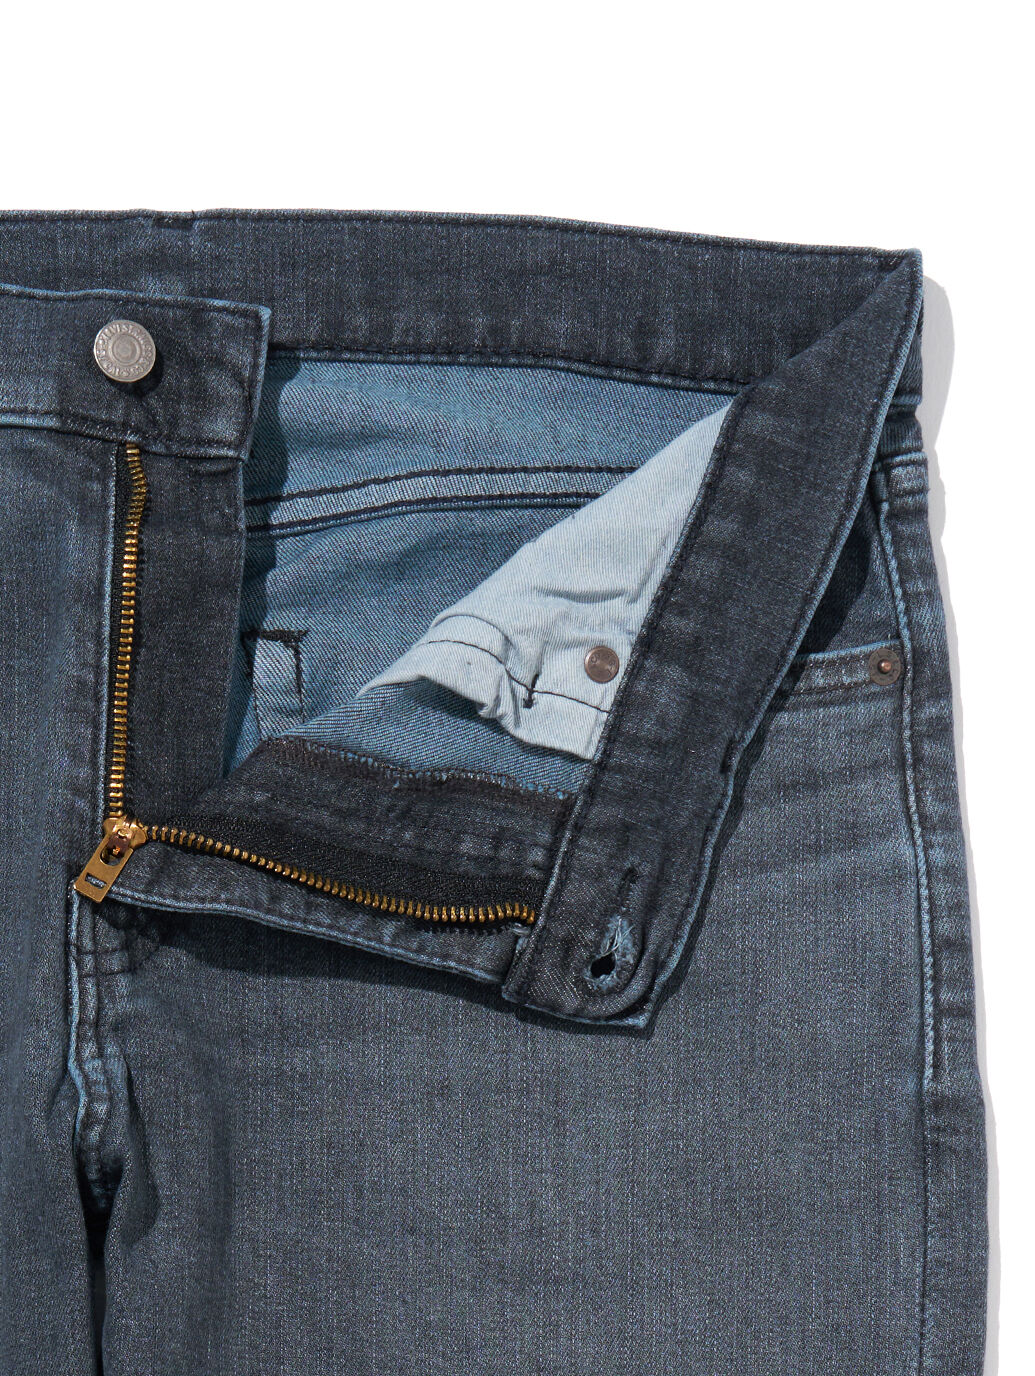 Flex Jeans 502™ テーパードジーンズ ブラック RICHMOND BLUE